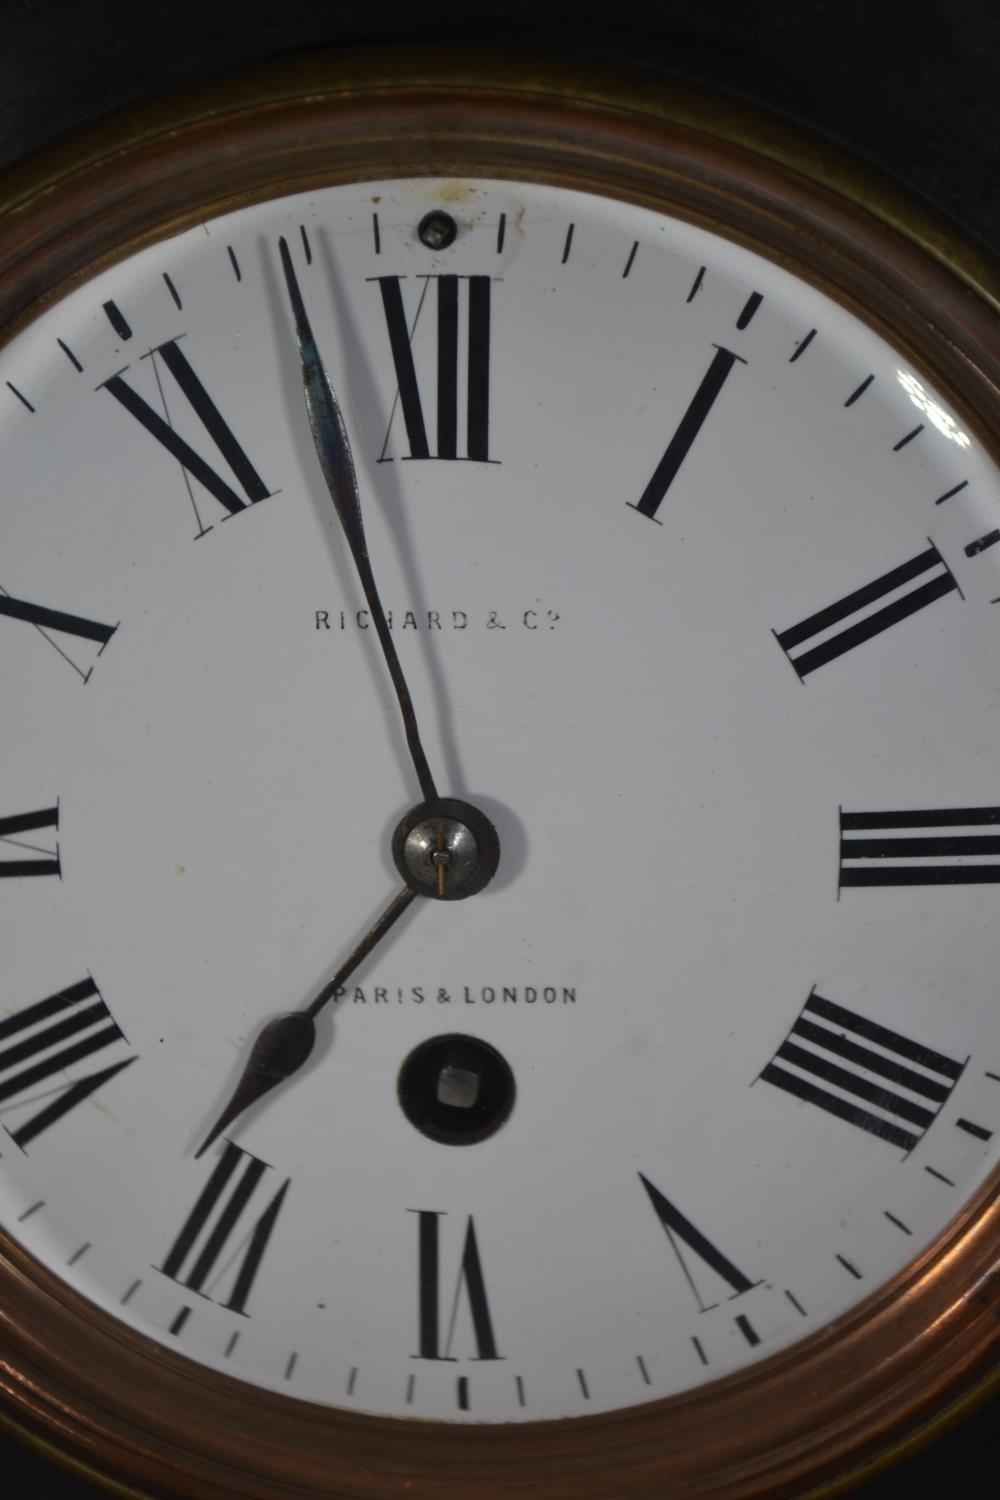 C19 marble mantle clock, by Richard & Co, Paris & London. W22cm H26cm D14cm  - Image 3 of 9